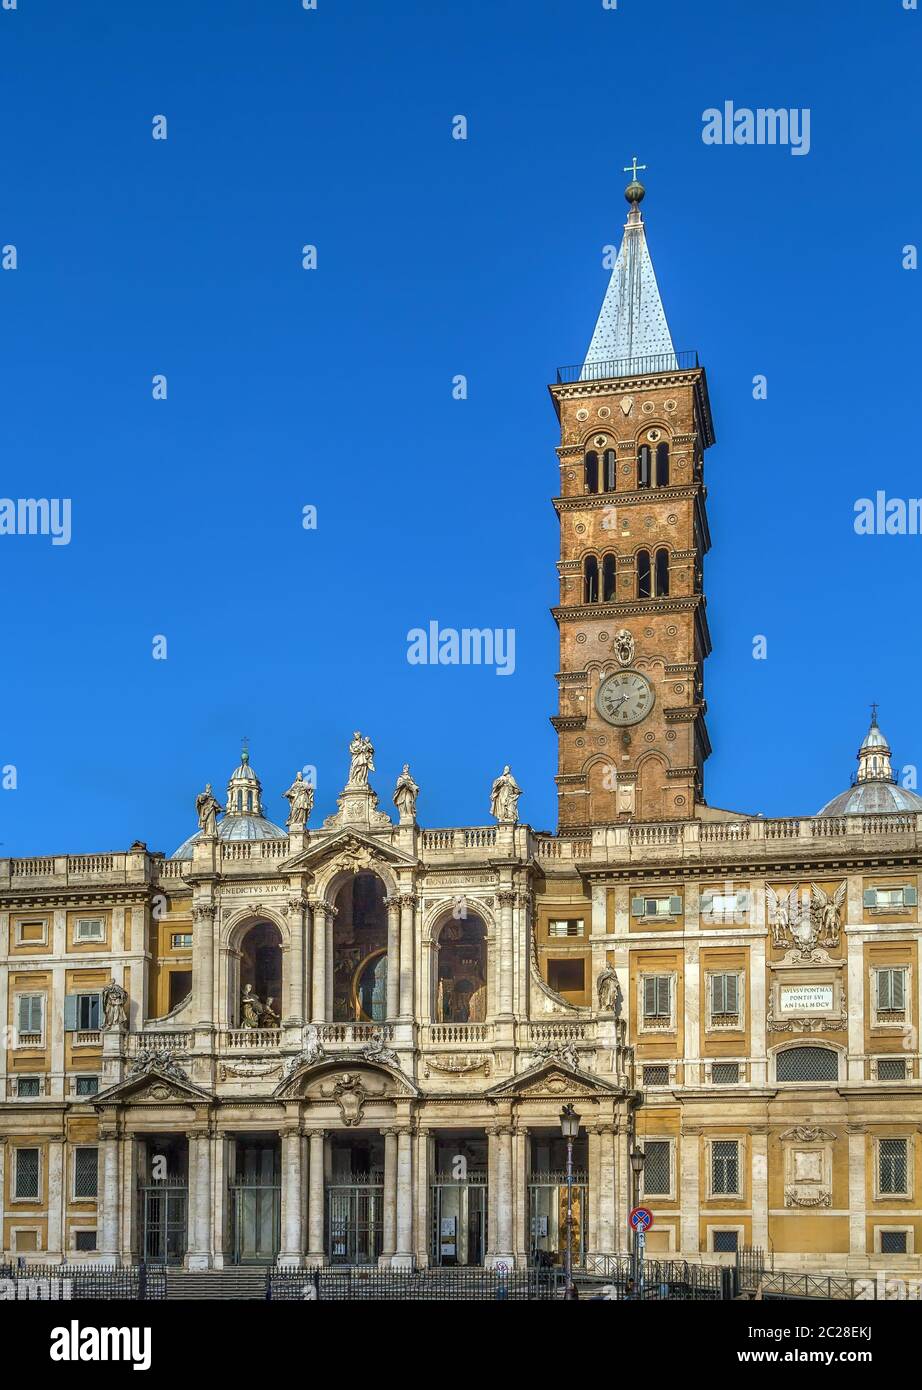 Basilica of Saint Mary Major, Rome Stock Photo